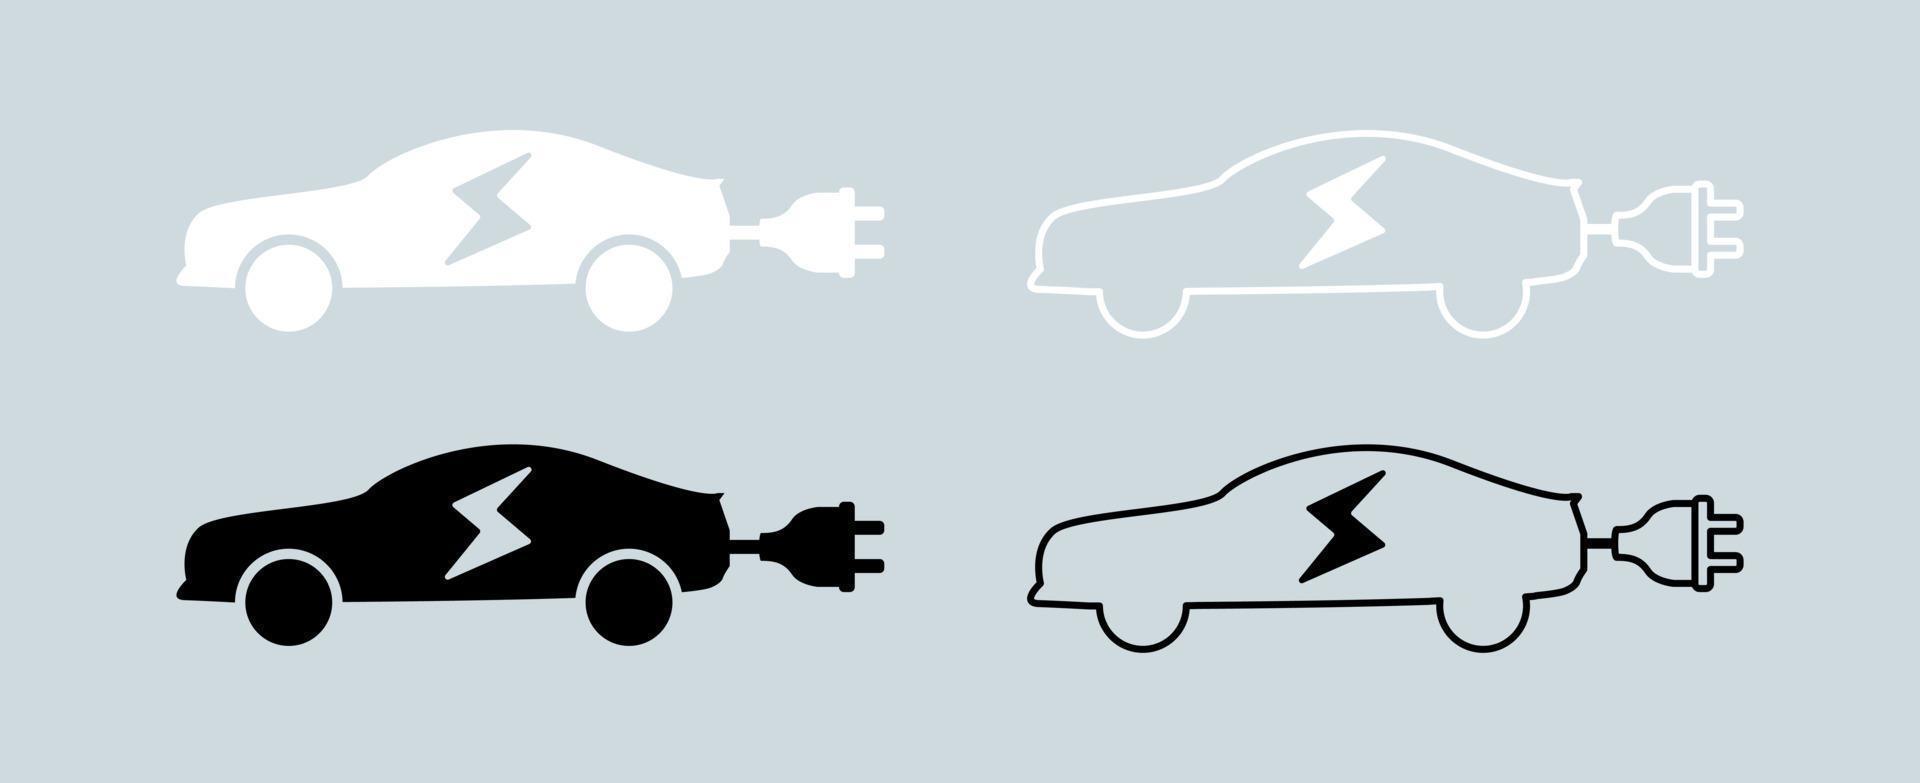 Elektroauto mit Steckersymbol in Schwarz-Weiß-Farben. Vektorsymbol für Elektrofahrzeuge. vektor